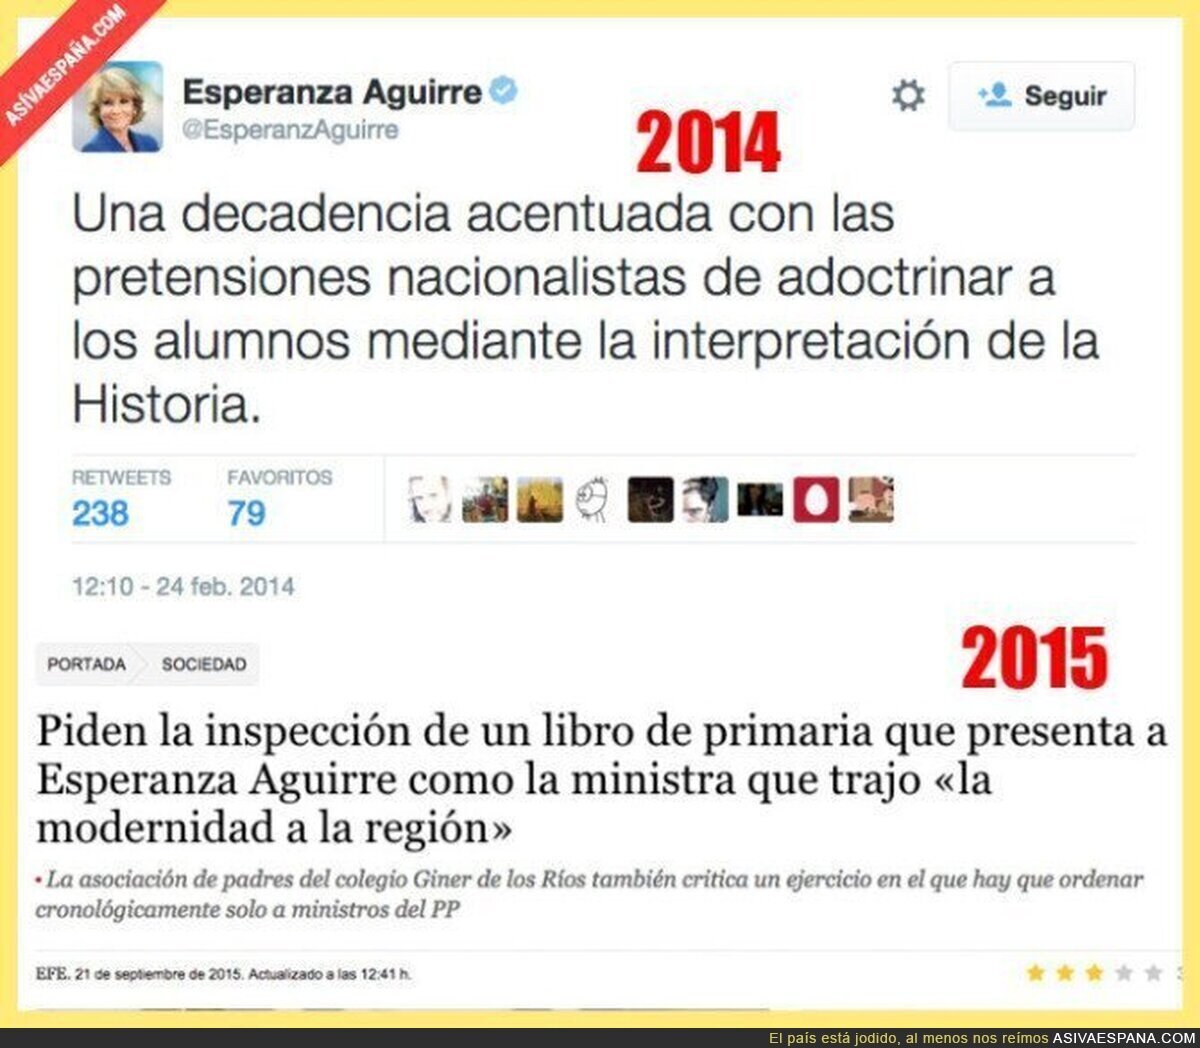 ¿Qué dirá ahora la señora Esperanza Aguirre de la educación?